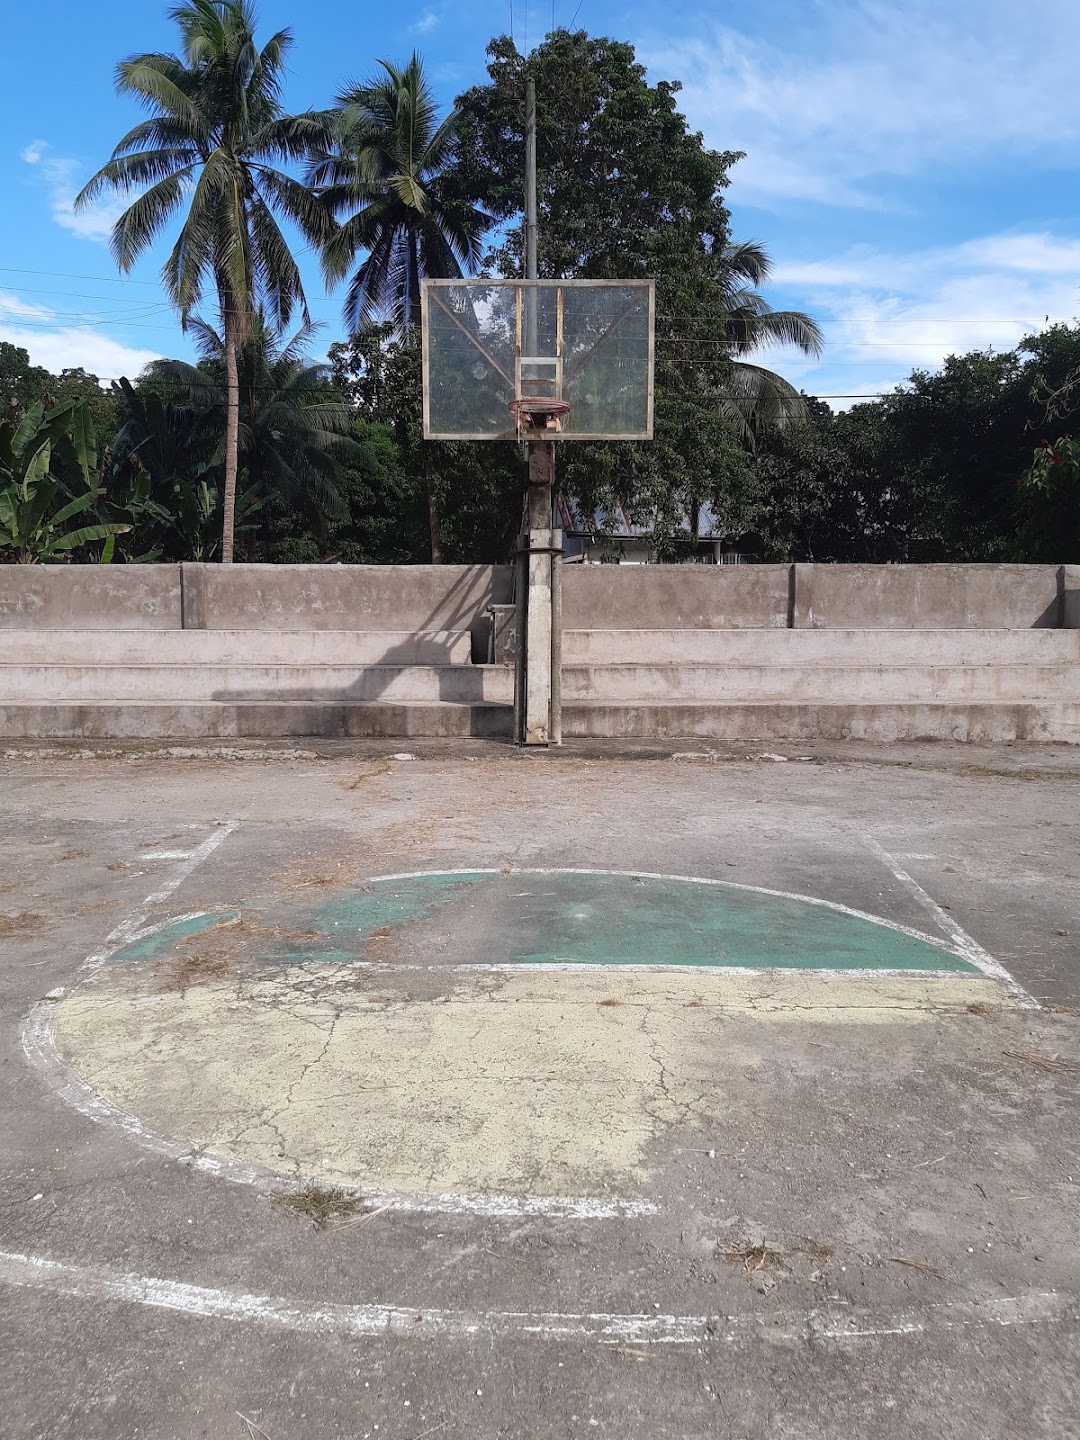 Bliss Basketball Court